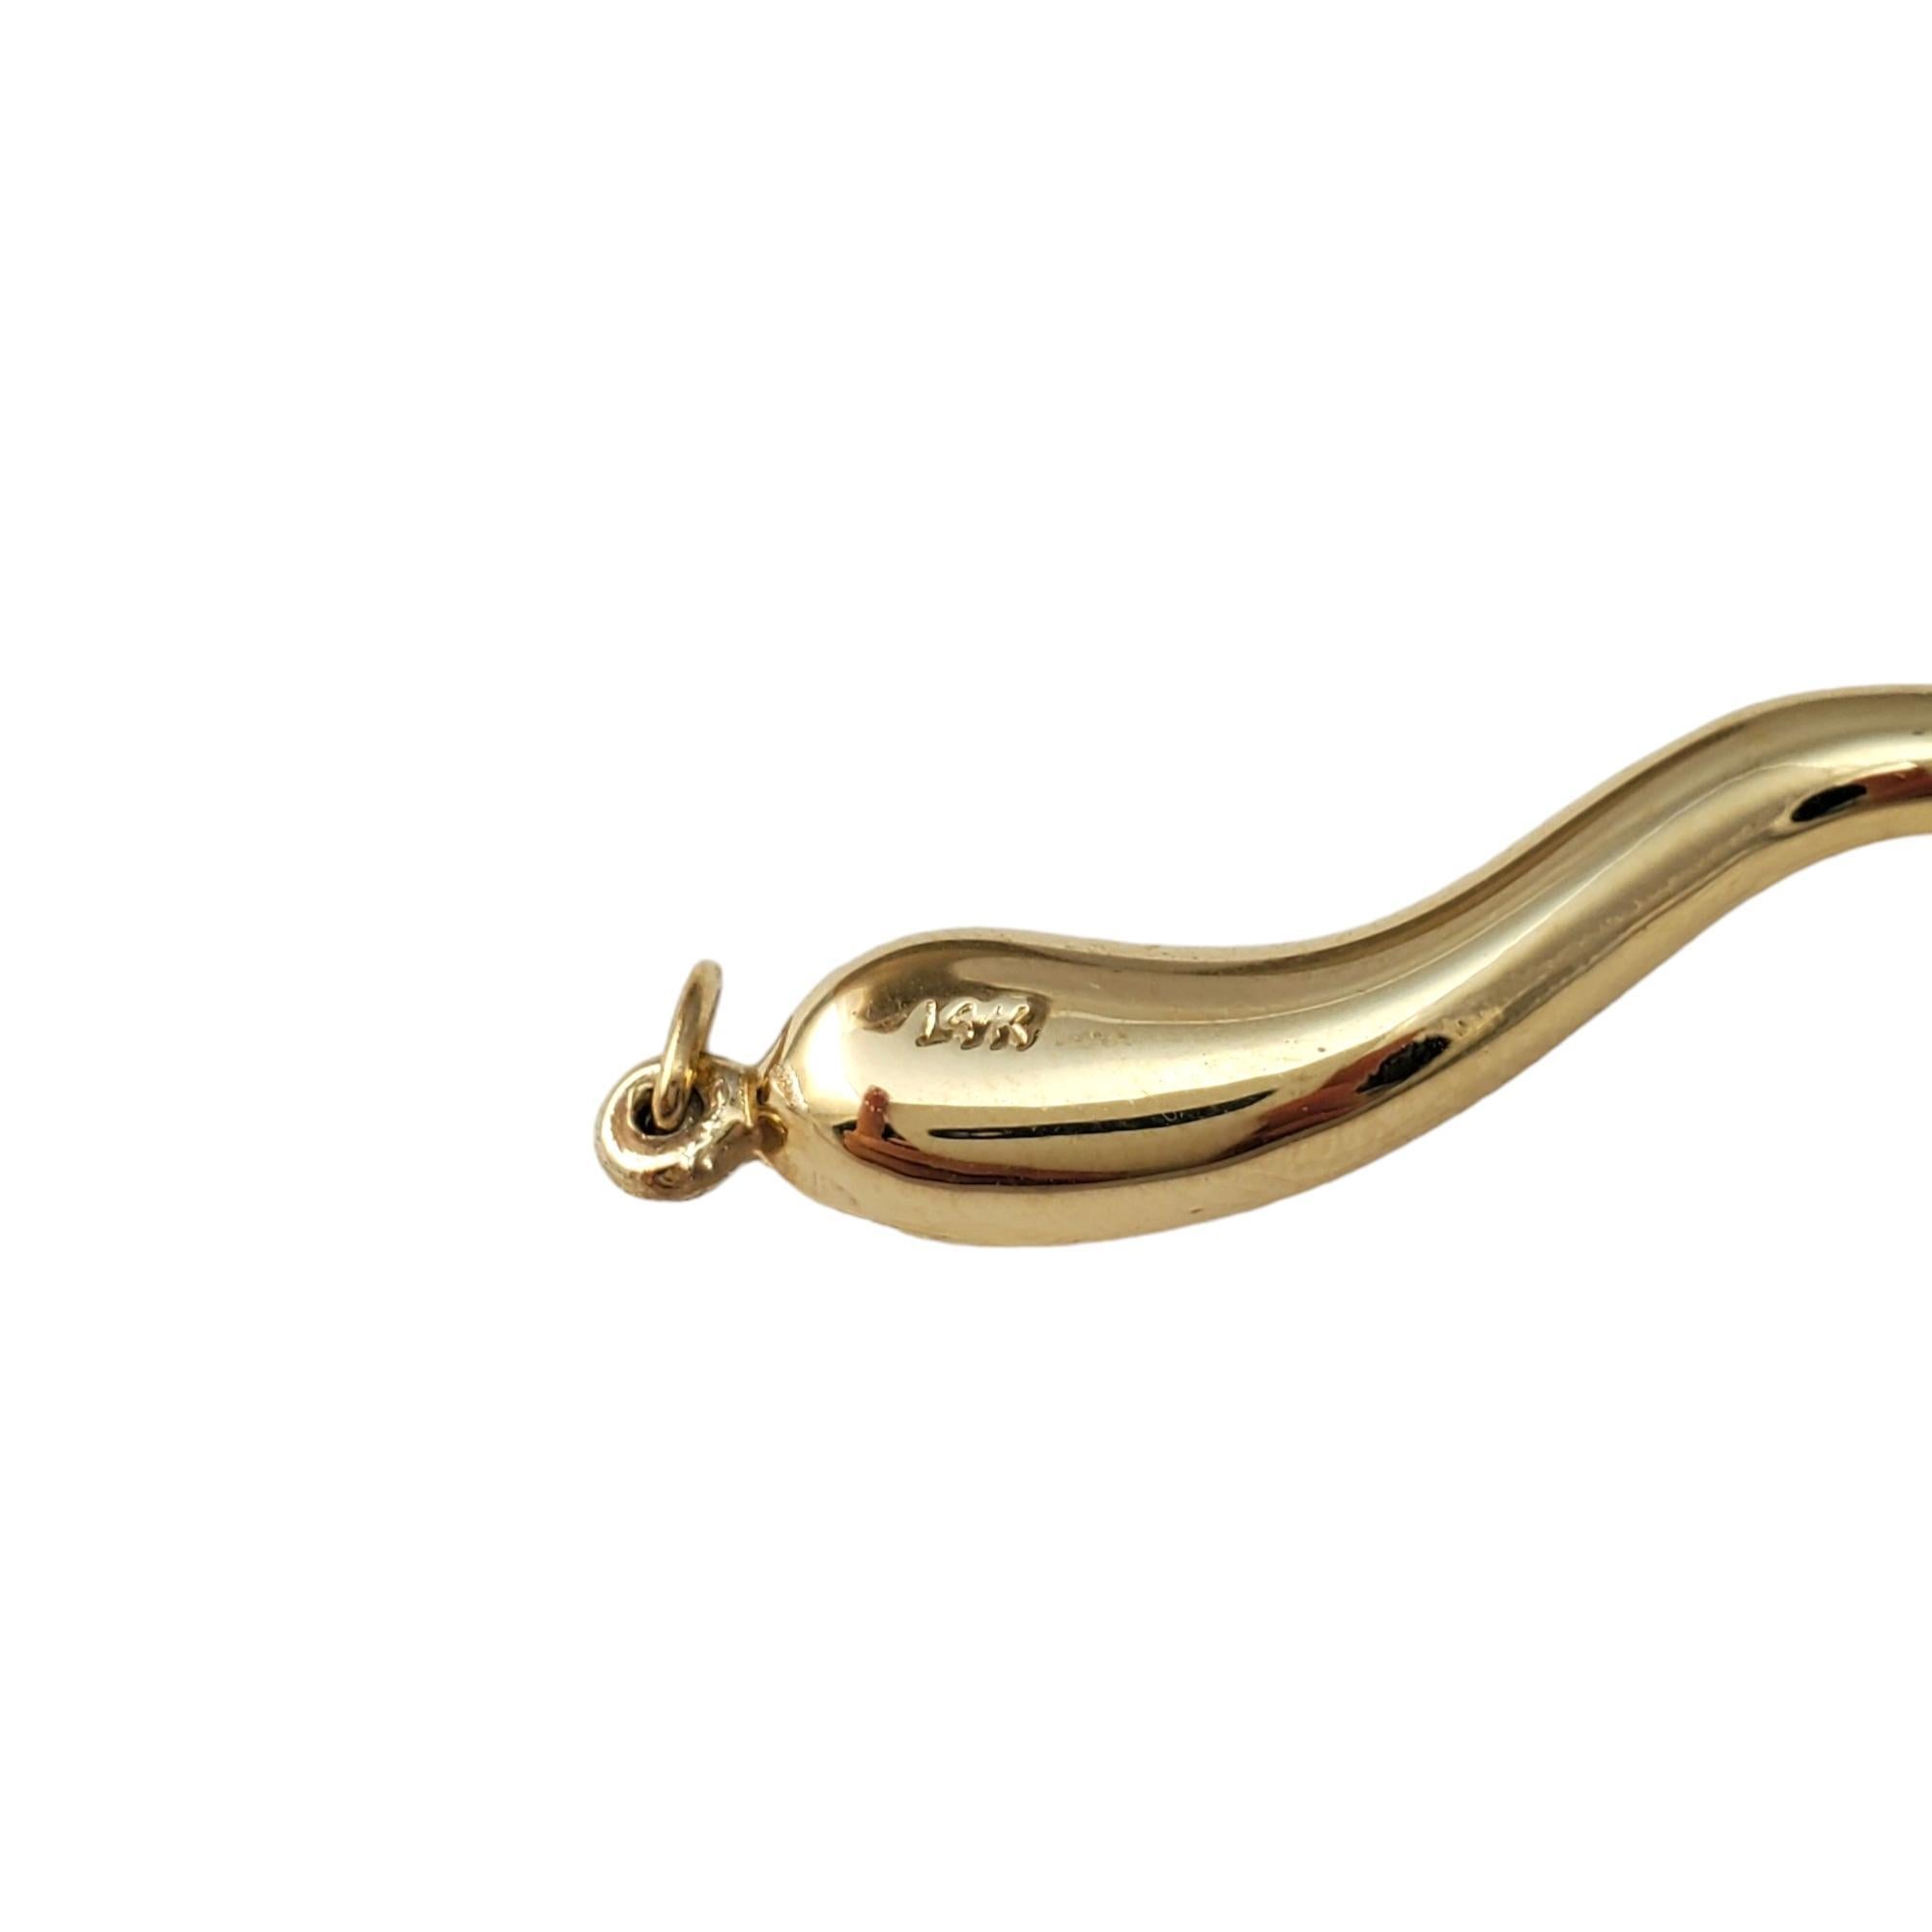 Vintage 14K Gelbgold Italienisches Horn Charme - 

Dieser unverwechselbare Charme ist eine Hommage an die italienische Kultur. 

Größe:  40.06mm X 4.22mm

Gewicht:  0.9 dwt. /  1,4 gr.

Sehr guter Zustand, professionell poliert.

*Kette nicht